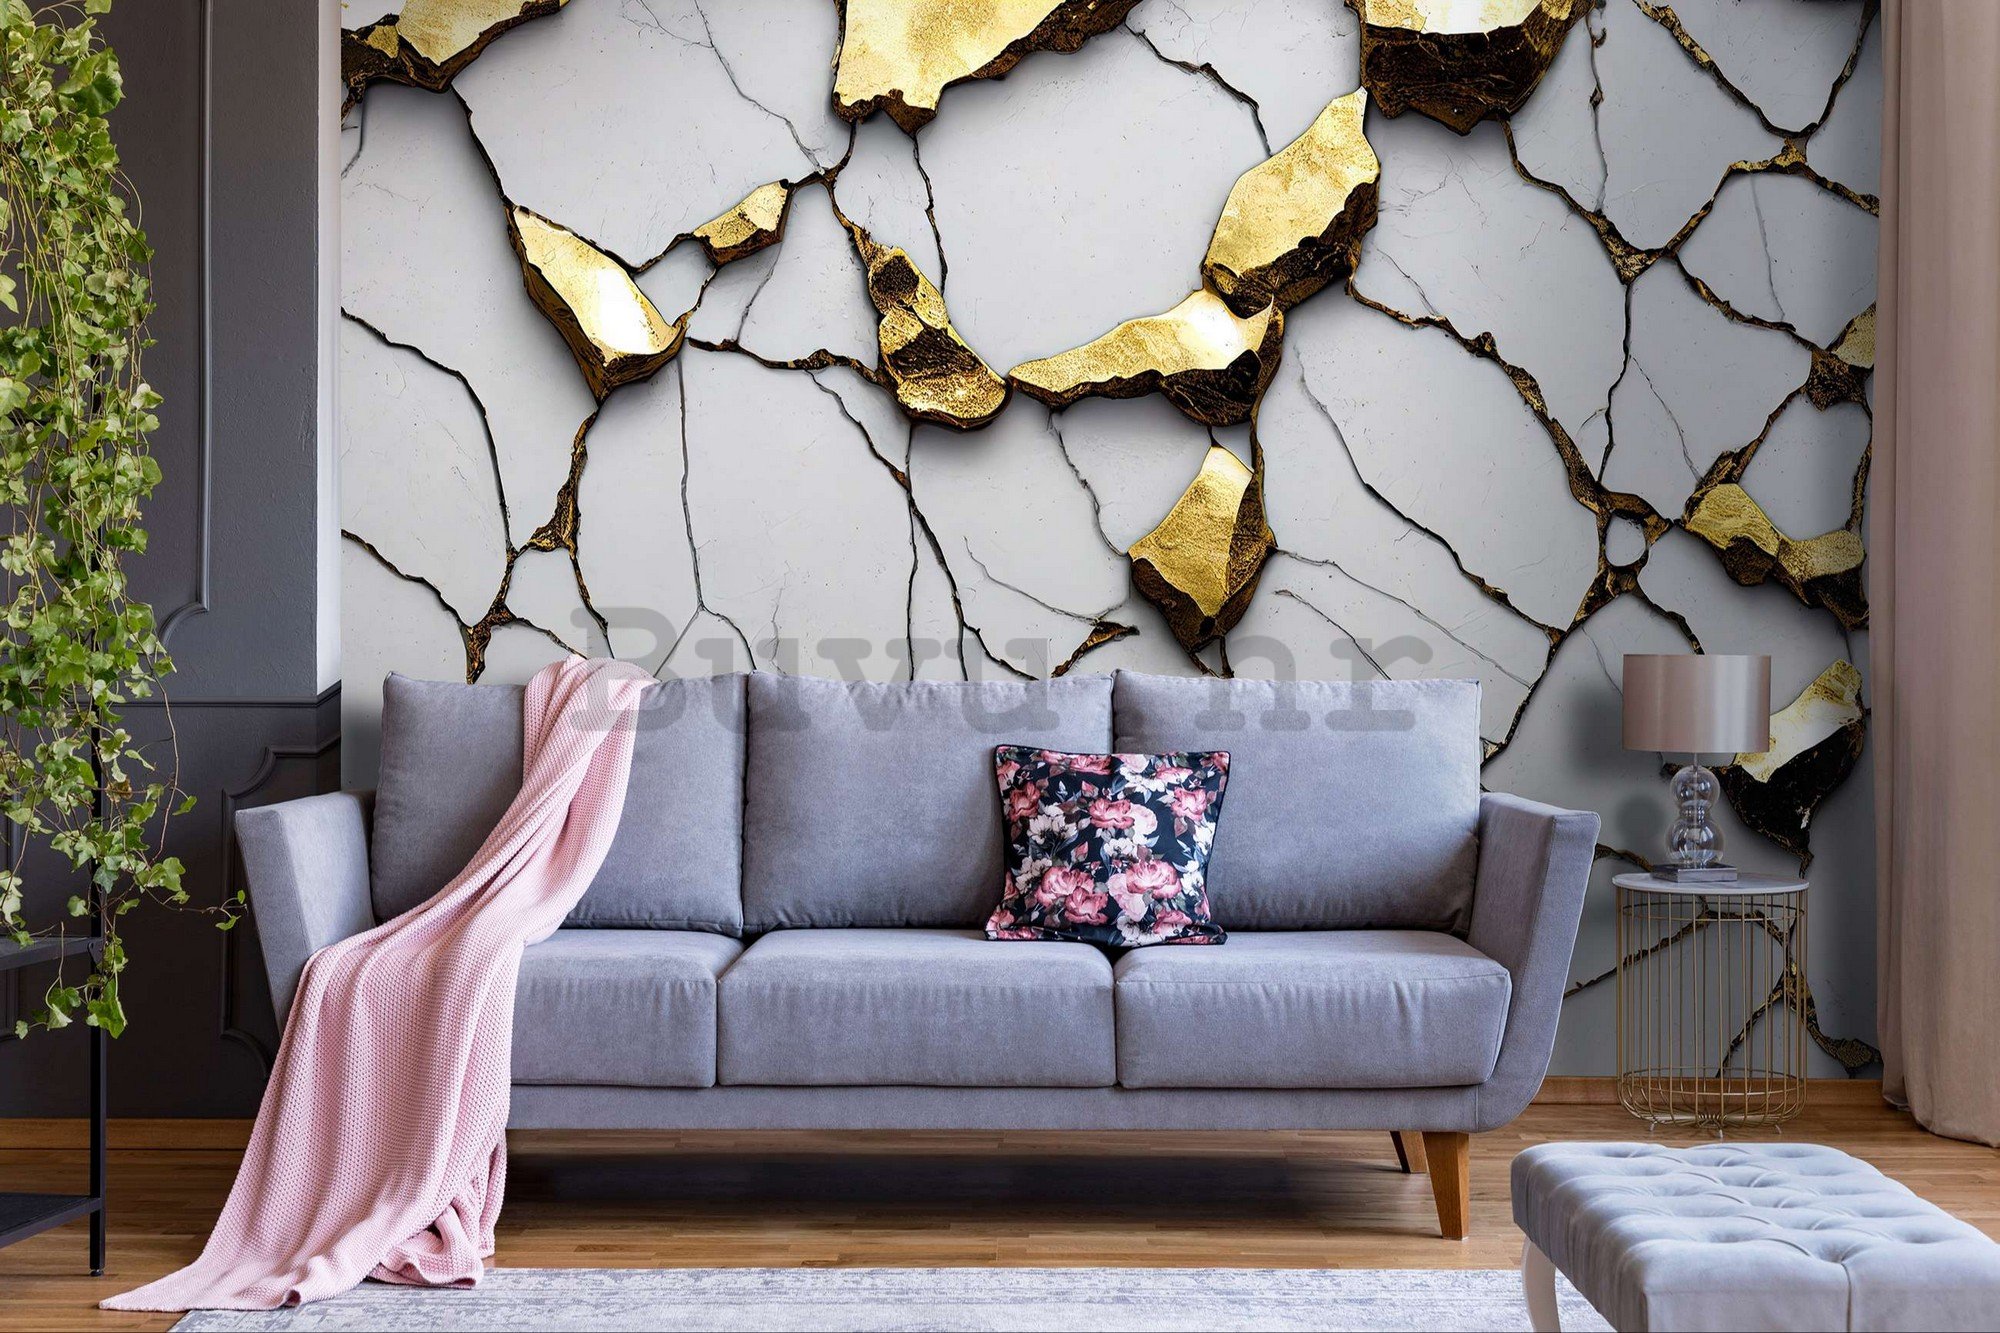 Vlies foto tapeta: Glamurozna imitacija zlatnog mramora s bijelim zidom - 368x254 cm